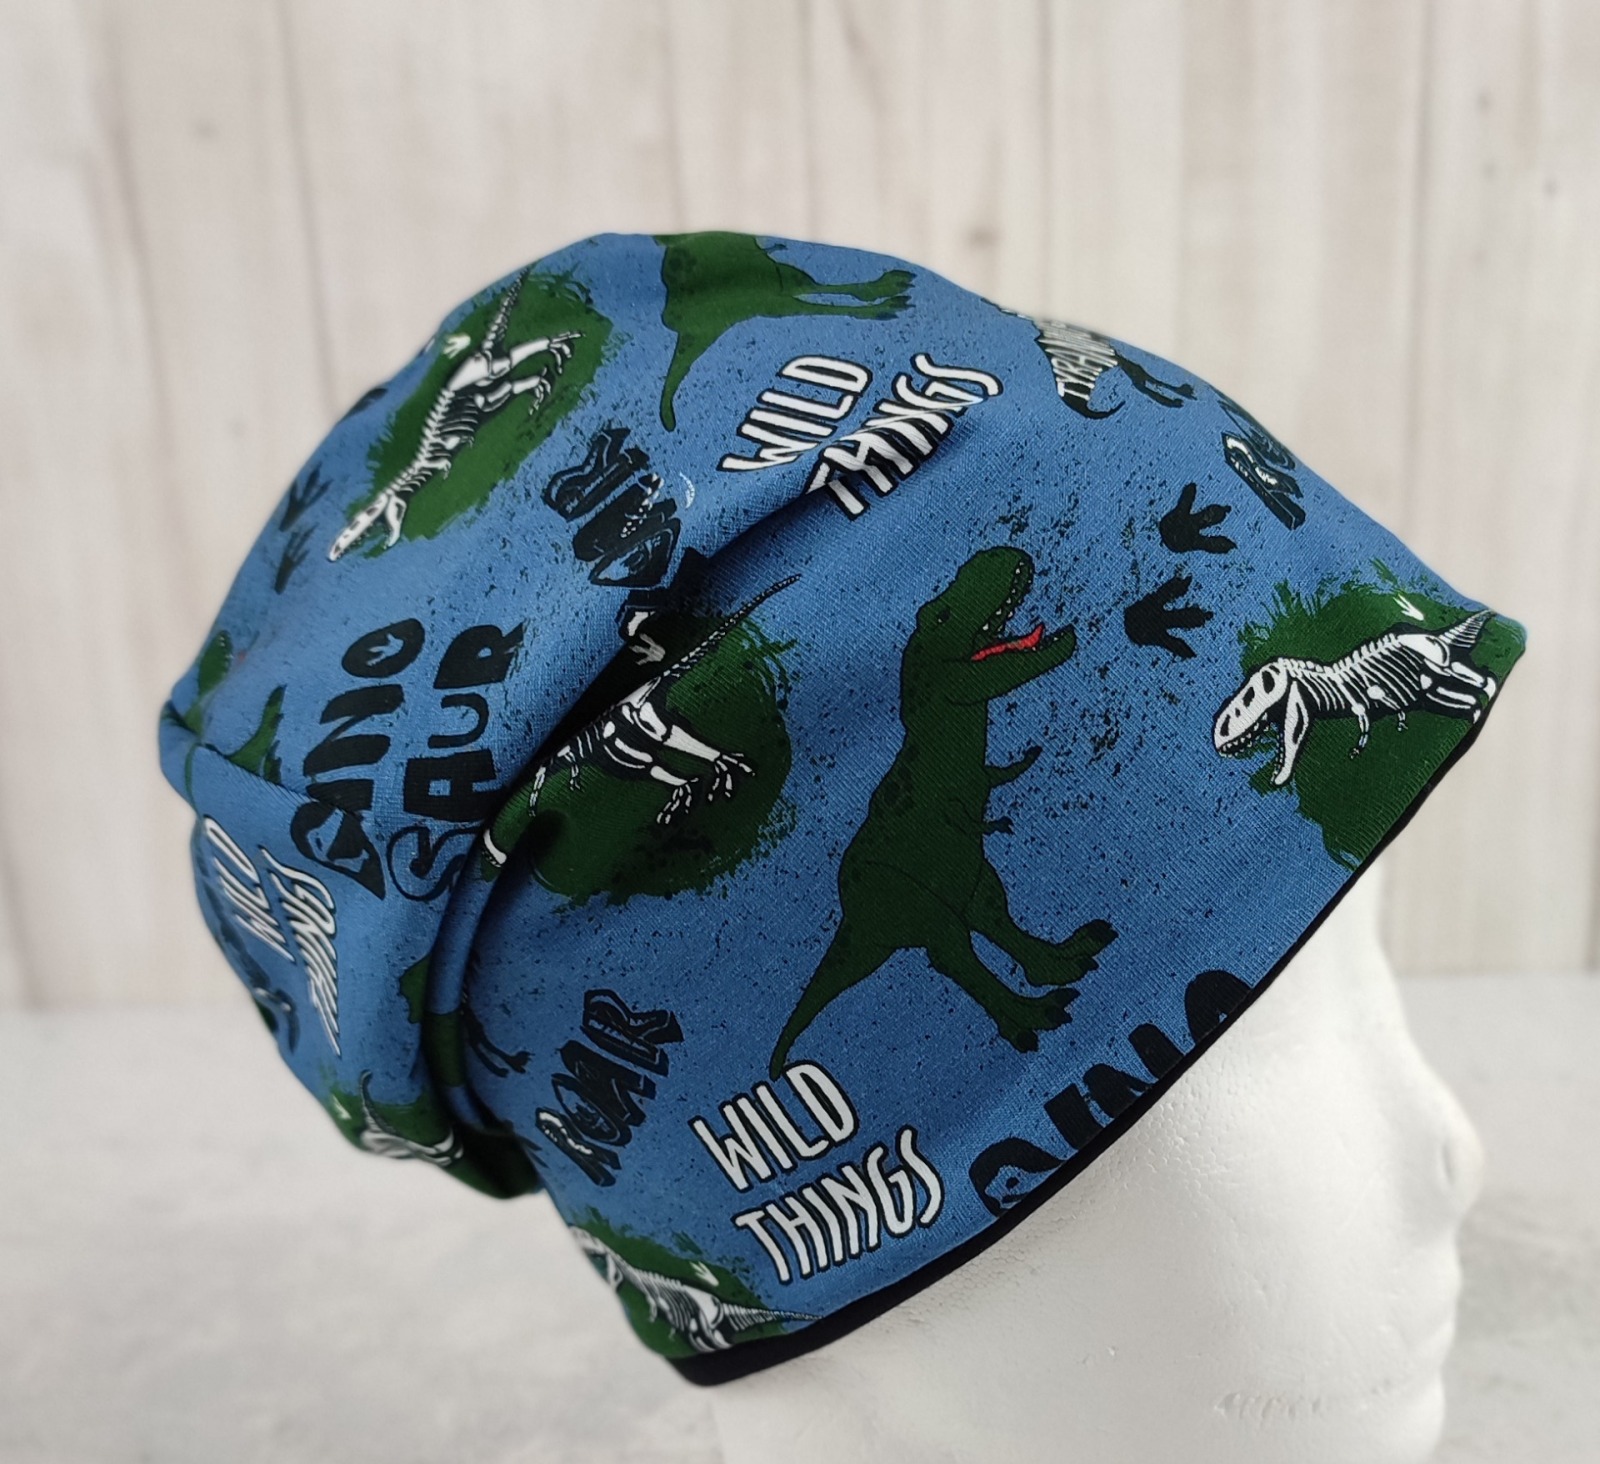 Beanie Dinosaurier - coole Mütze für Kinder mit Dinos auf Jersey in jeansblau Größe ca 48 - 54 cm Kopfumfang 2